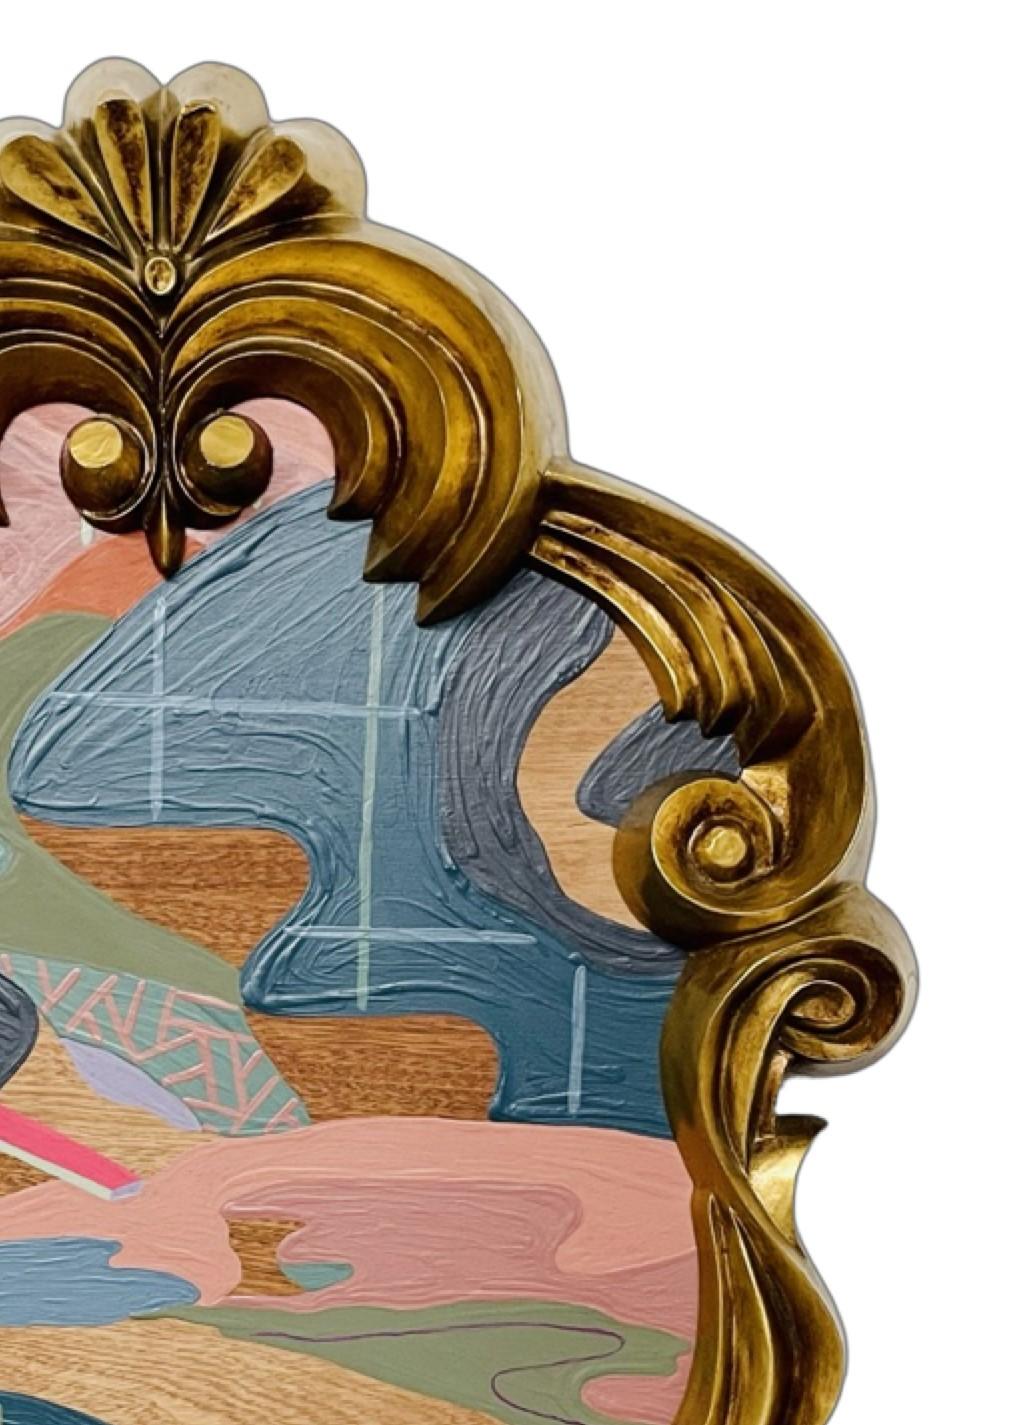 Zeitgenössische farbenfrohe abstrakte Landschaftsmalerei des in New Jersey lebenden Künstlers Russ Rubin. Das Werk zeigt eine jenseitige Landschaft, die sich in gedämpften Wüstentönen windet und vom Künstler in einen vergoldeten dekorativen